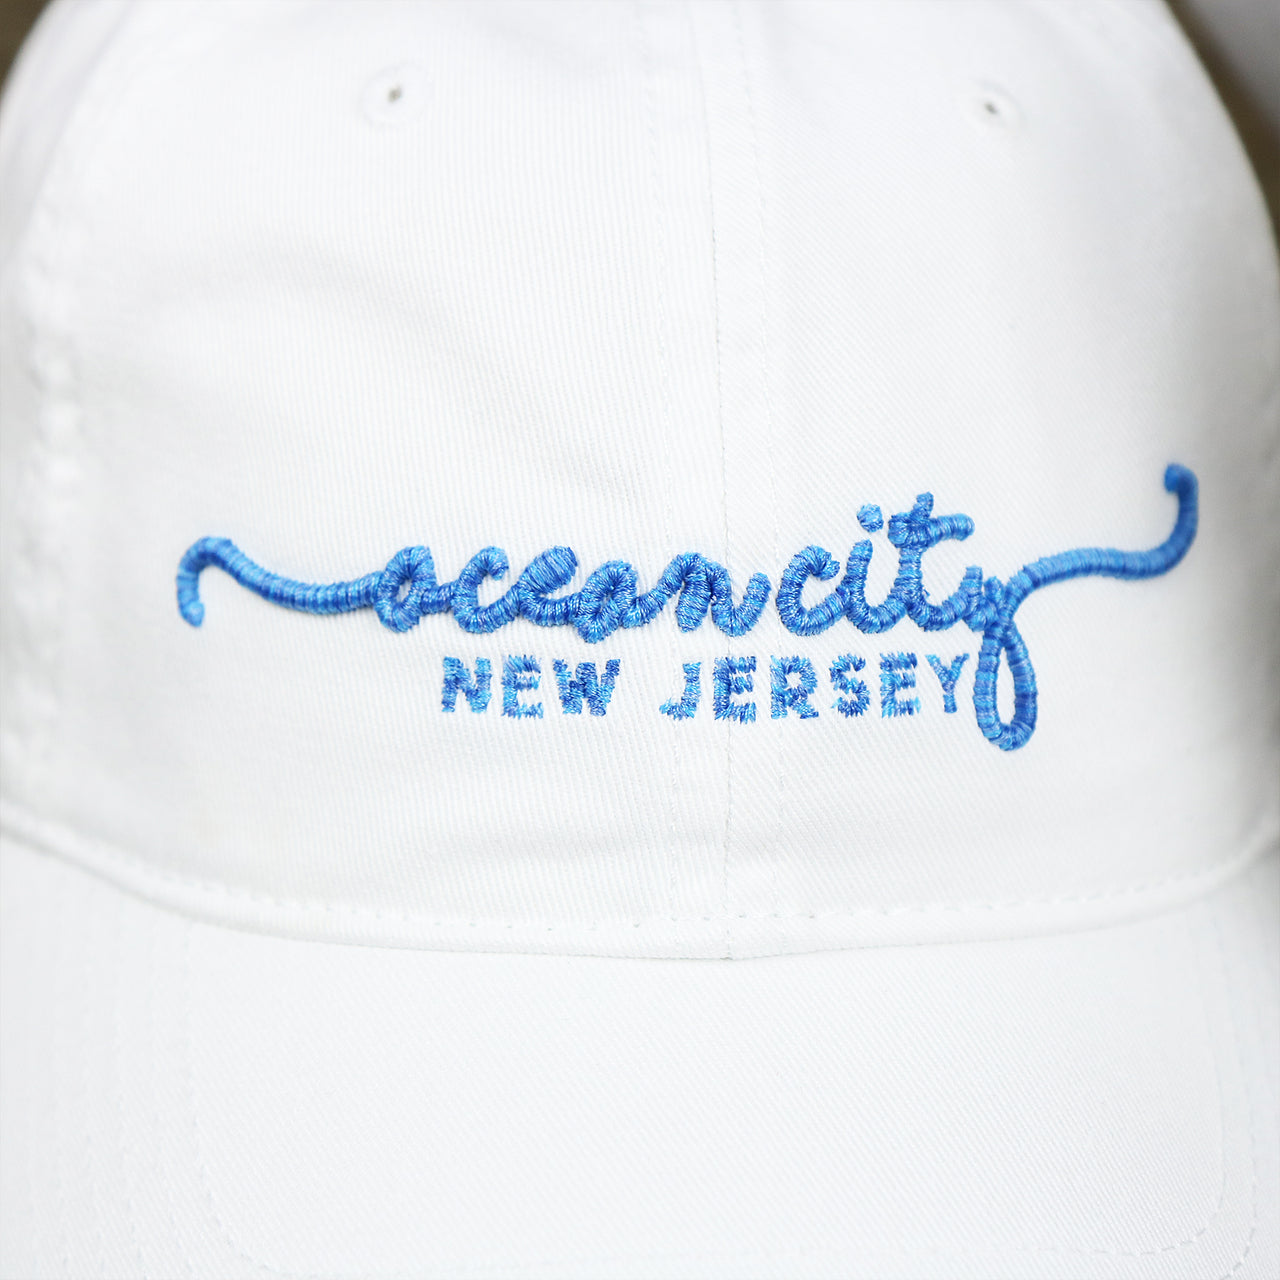 The Ocean City New Jersey Wordmark on the OCNJ New Jersey Ocean City Cursive Wordmark Dad Hat | White Dad Hat 